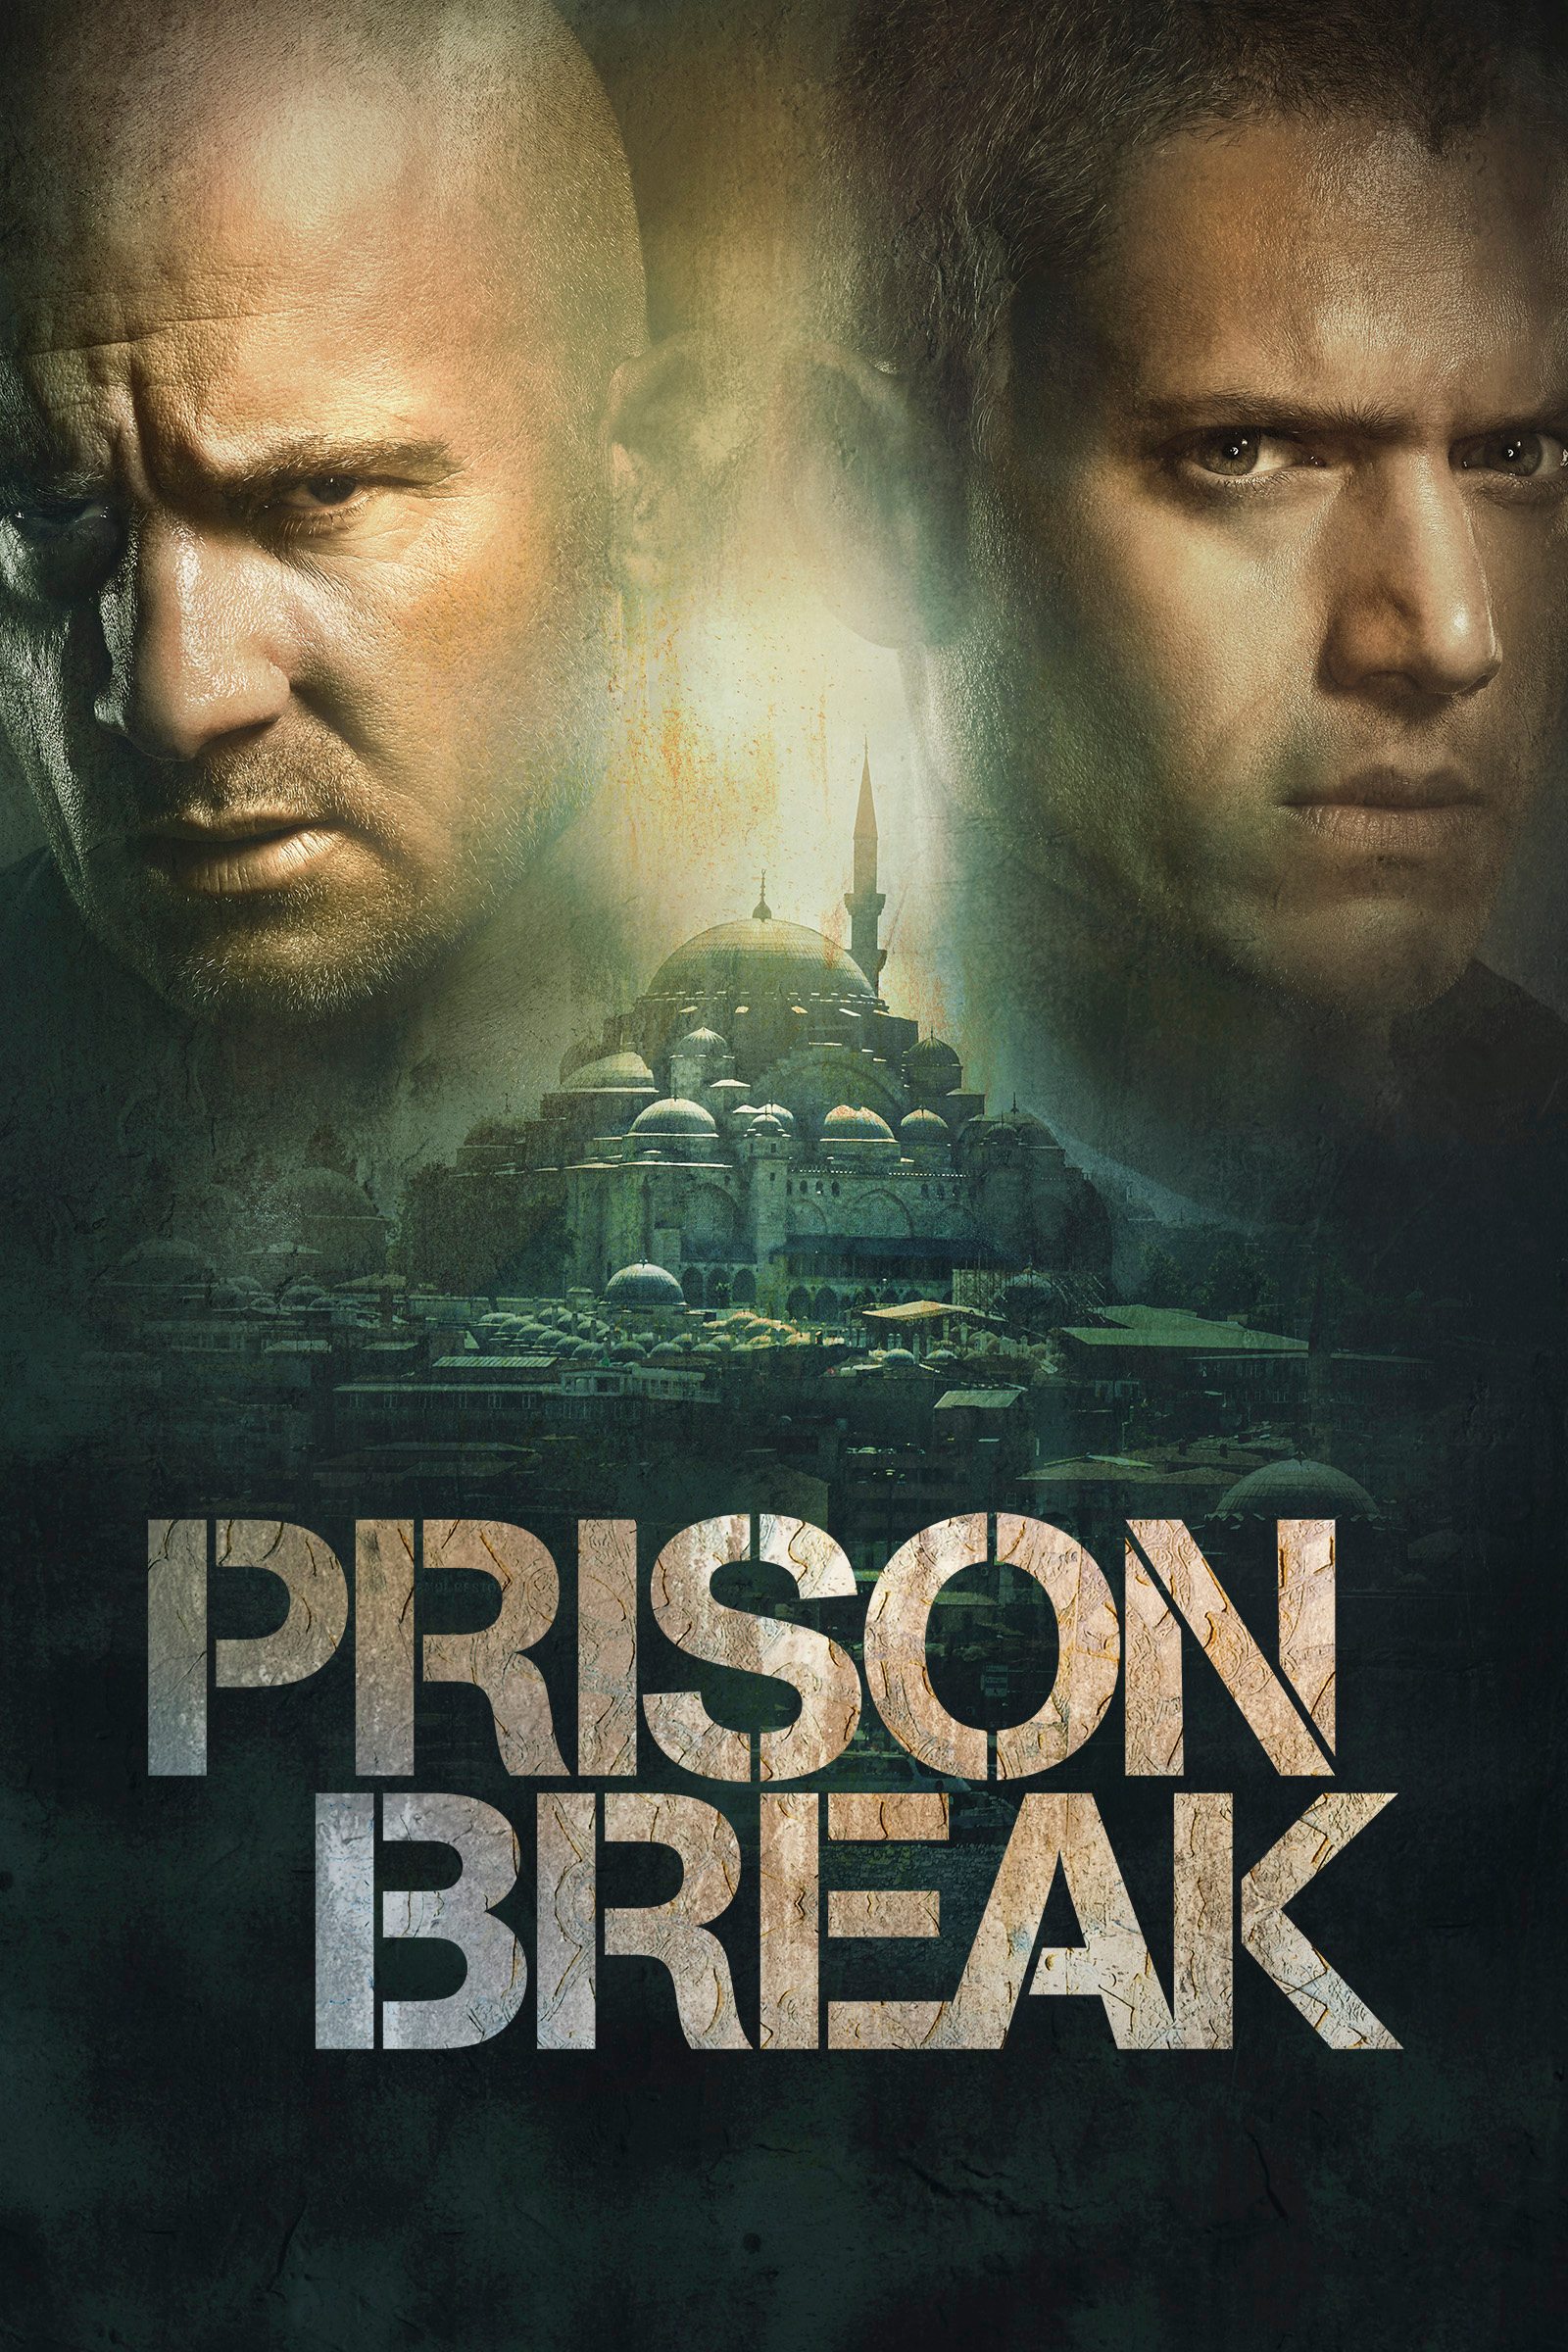 cast of prison break season 1